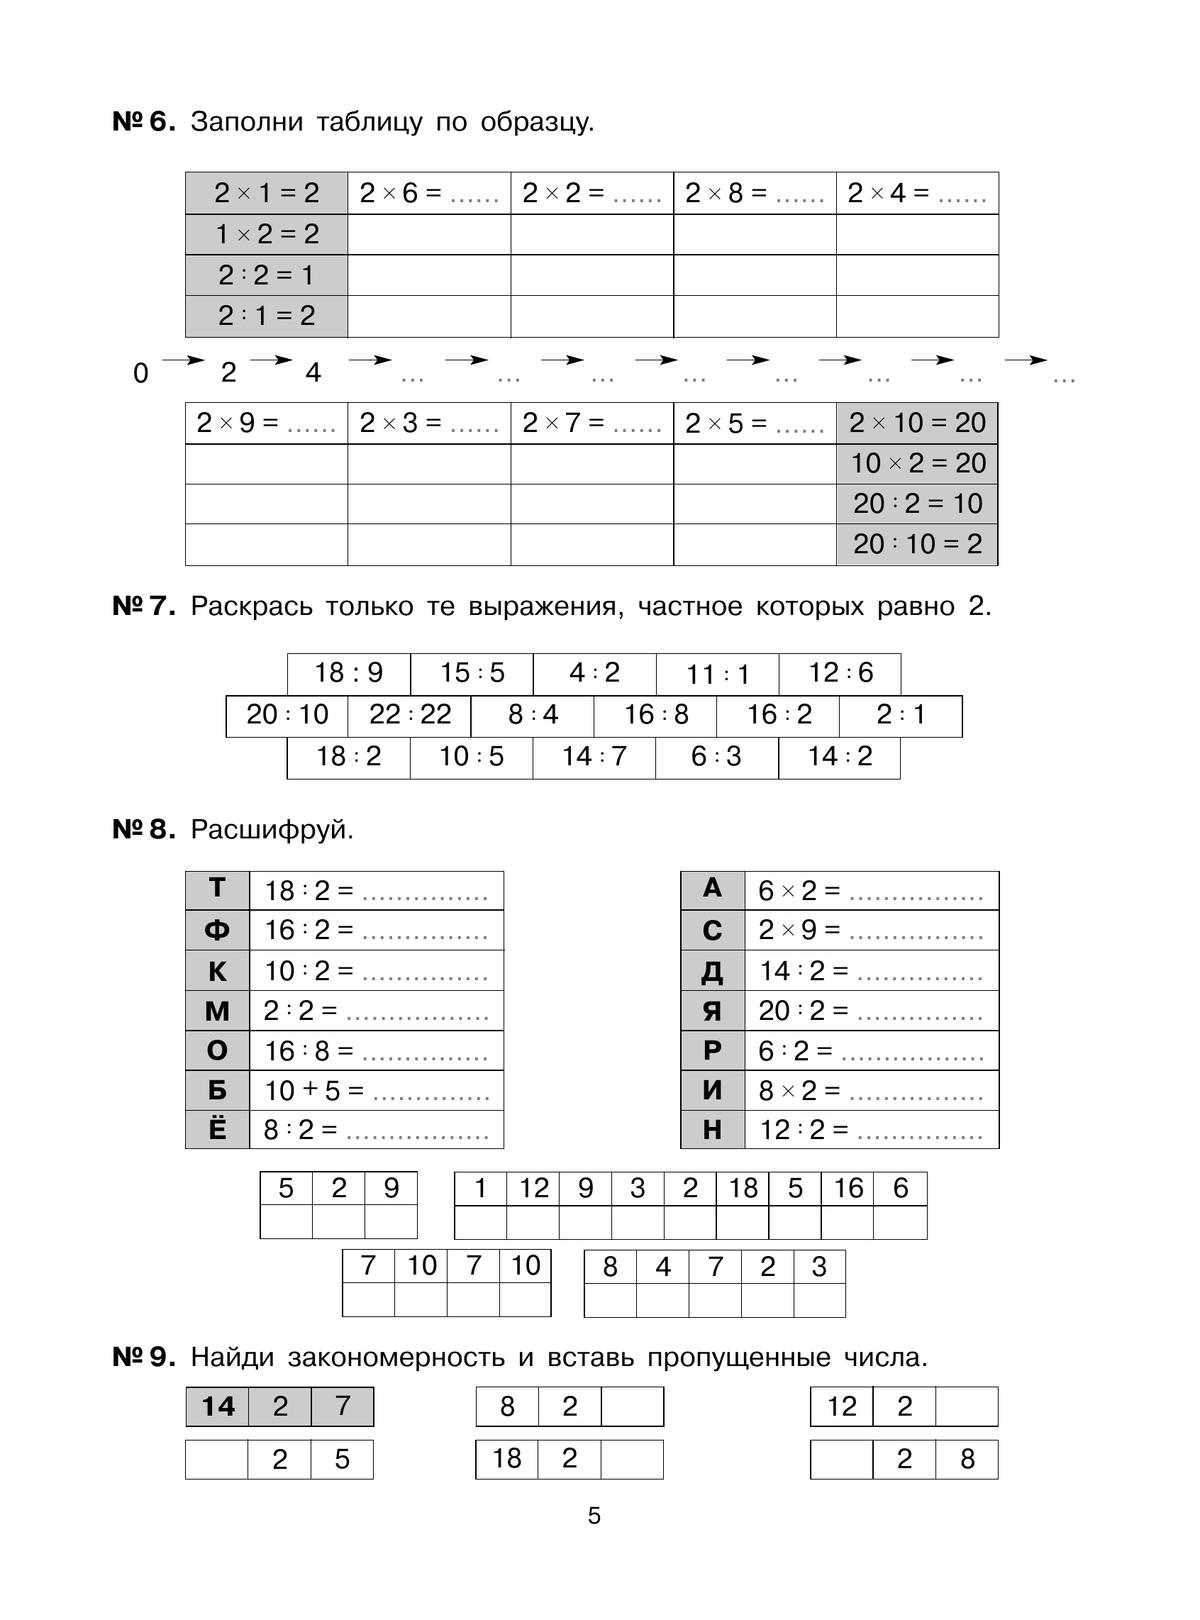 Тетрадь-практикум по математике для 2-3 классов. Табличное умножение и деление 4